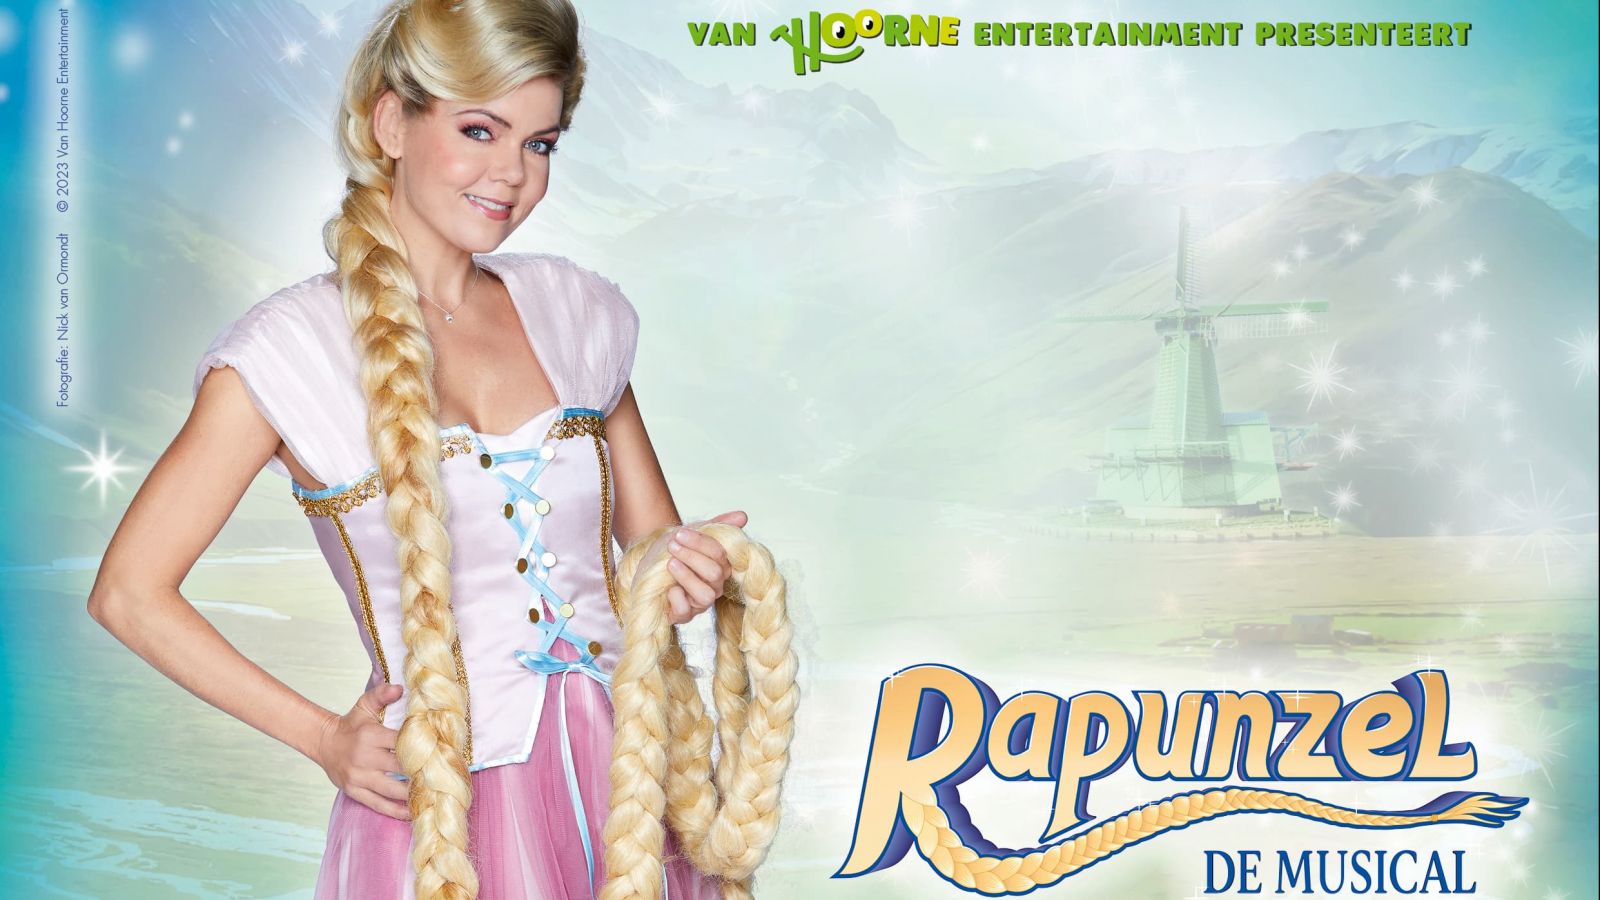 Promobeeld familievoorstelling Rapunzel de Musical van Van Hoorne entertainment in theater Flint Amersfoort